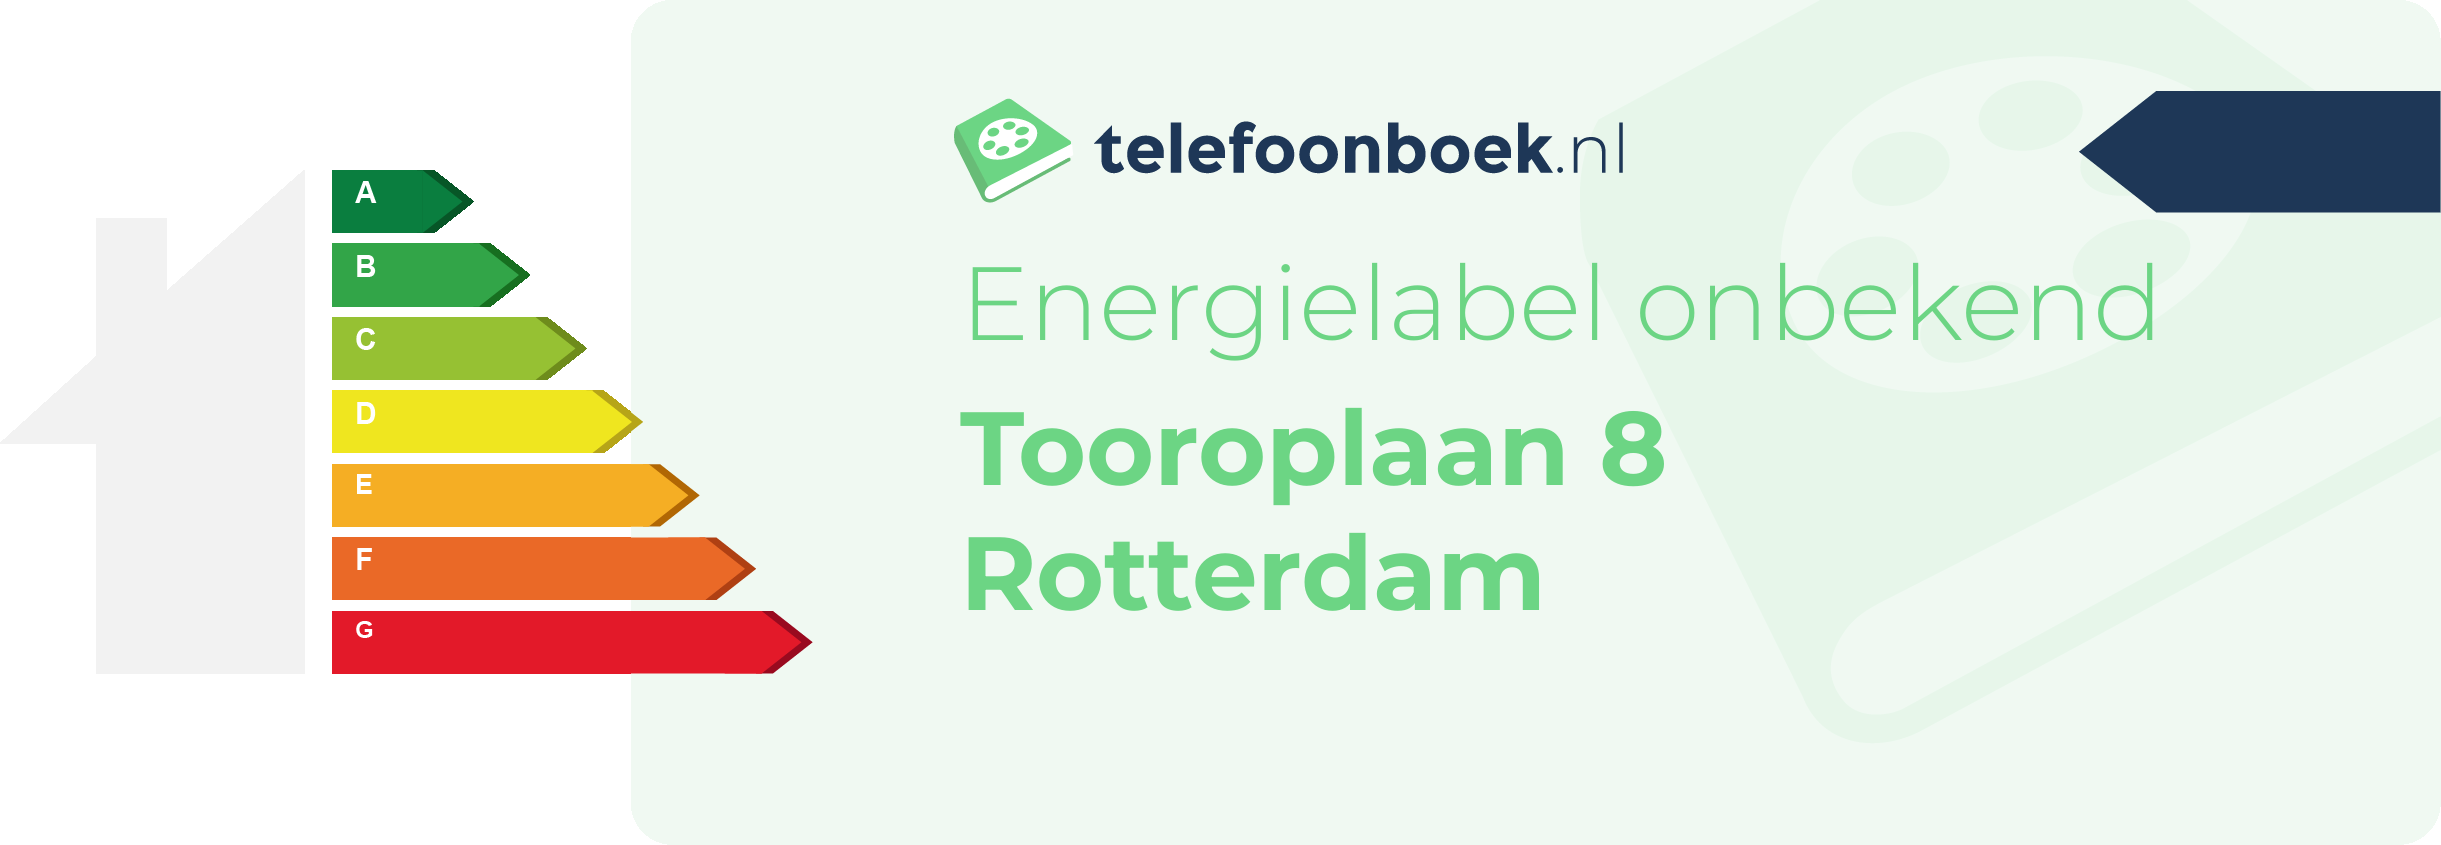 Energielabel Tooroplaan 8 Rotterdam